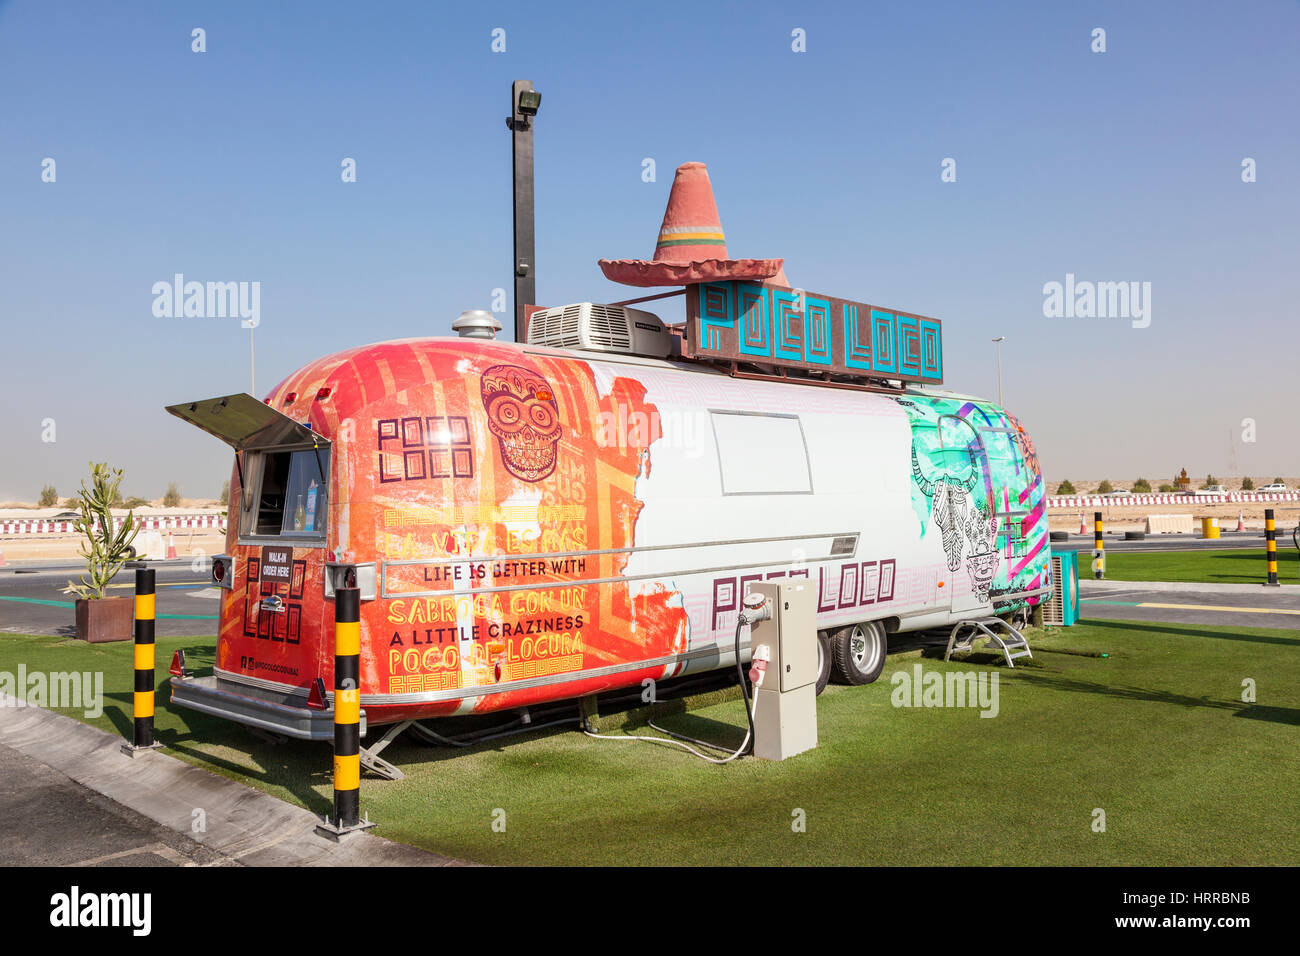 Dubaï, Émirats arabes unis - 27 nov., 2016 : caravane Airstream converti à un camion alimentaire alimentaire à la dernière sortie sur le parc de camions de l'autoroute E11 entre Abu Dhabi et Duba Banque D'Images